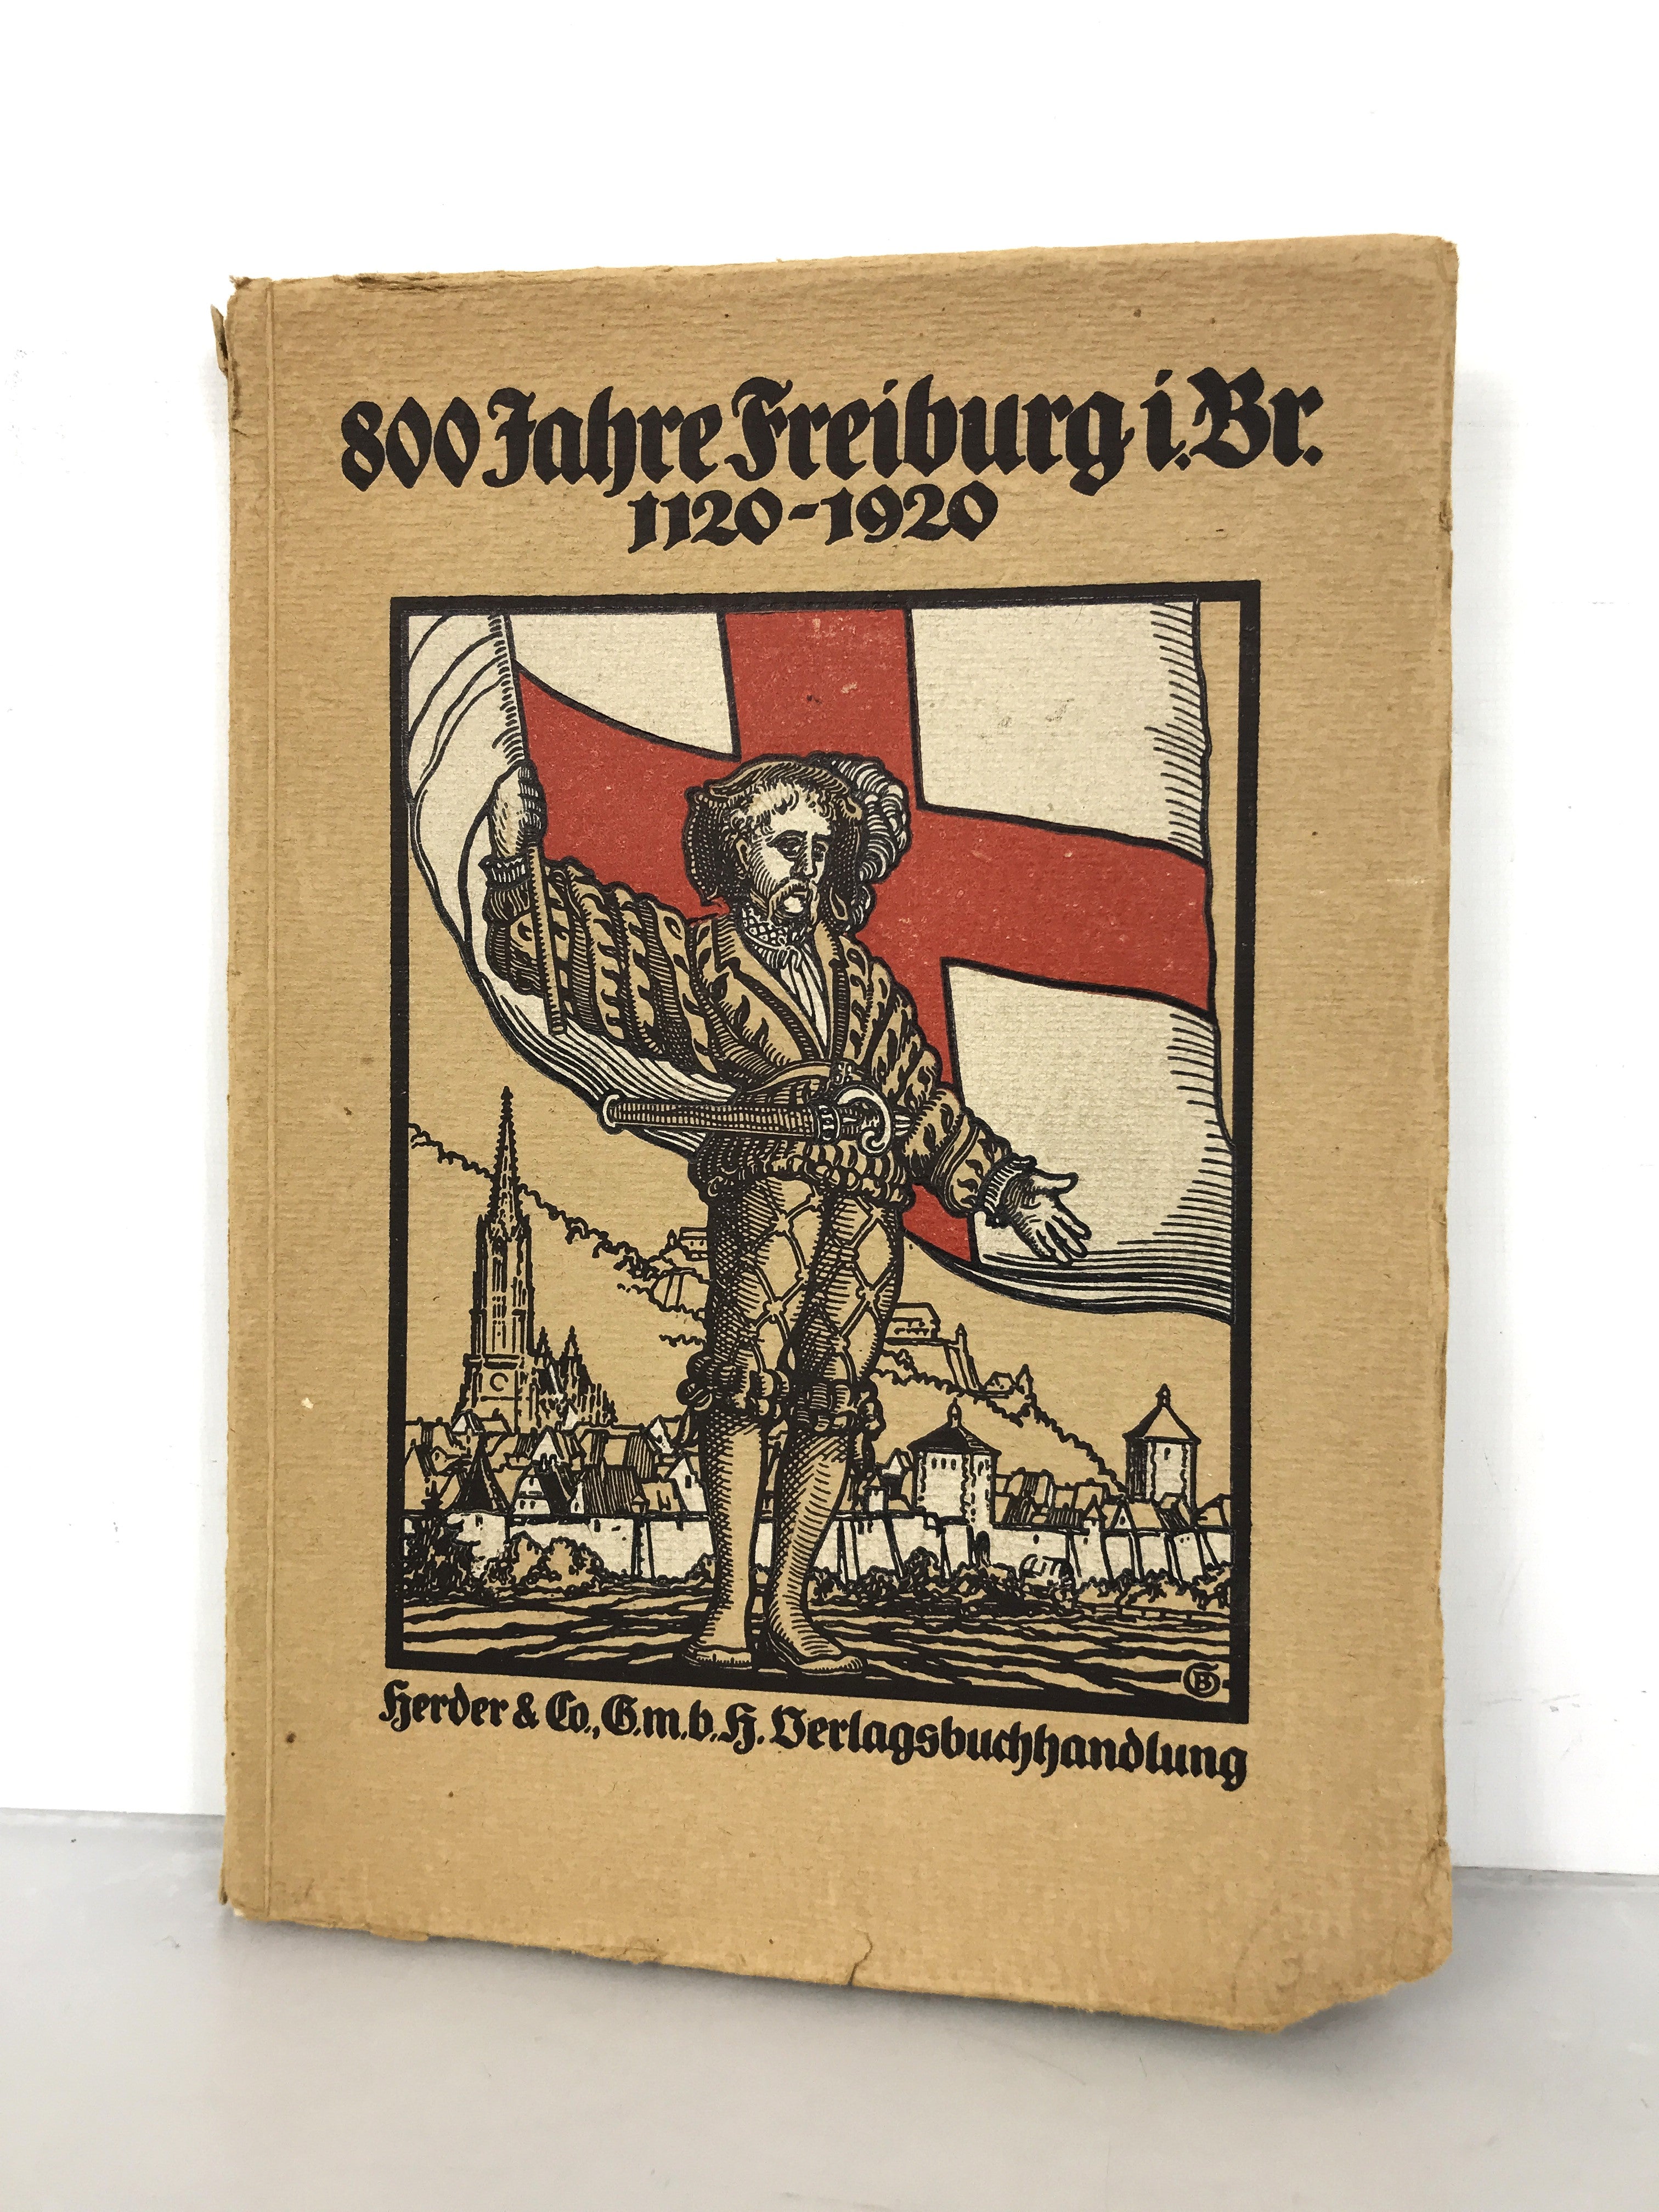 800 "Years of Freiburg" 1120-1920 by Peter Albert in German SC